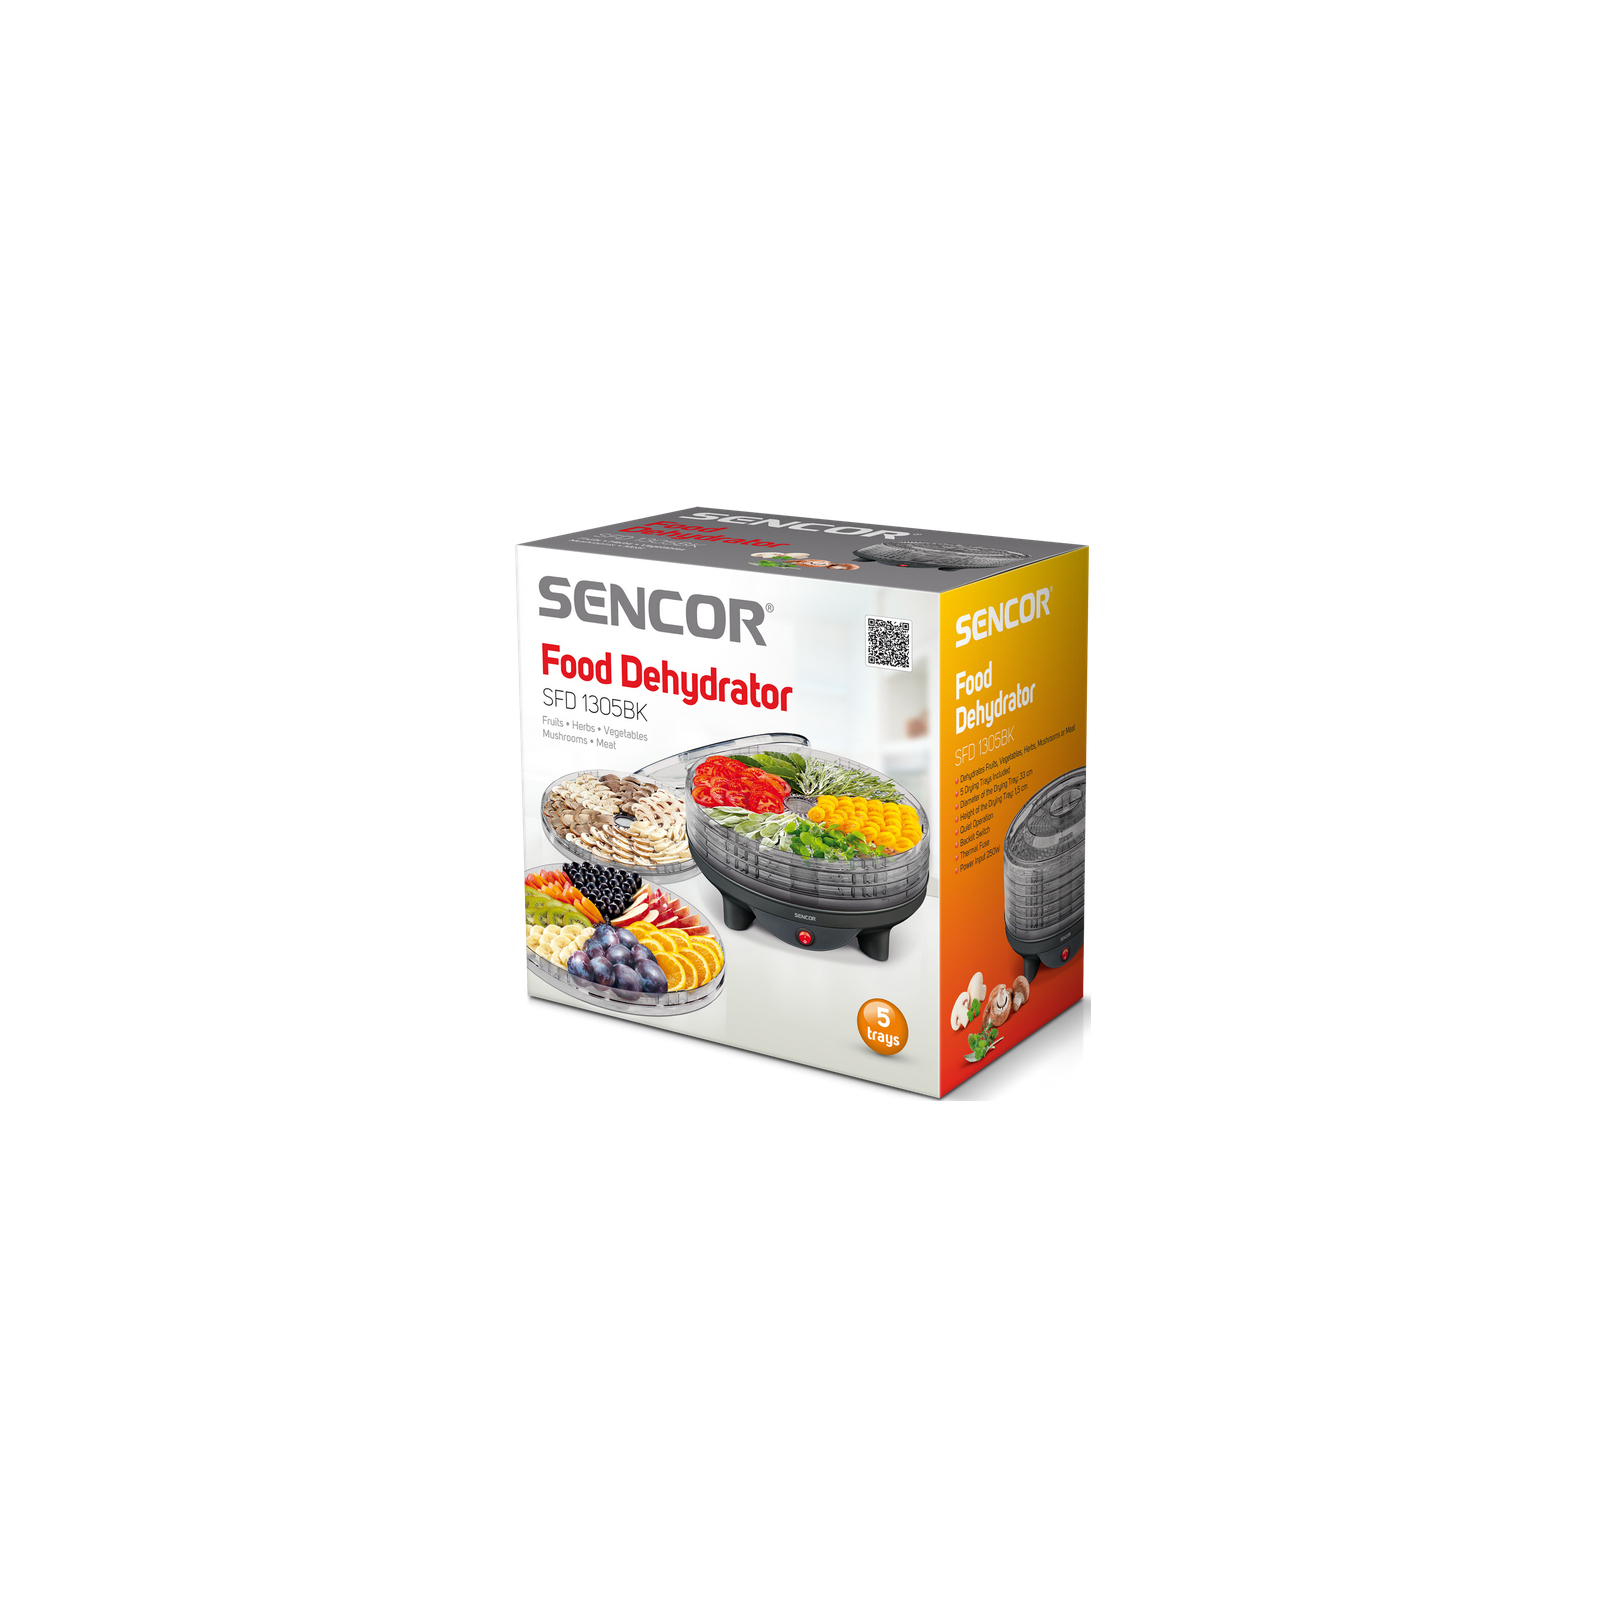 Сушка для овощей и фруктов Sencor SFD 1305 BK (SFD1305BK) изображение 3